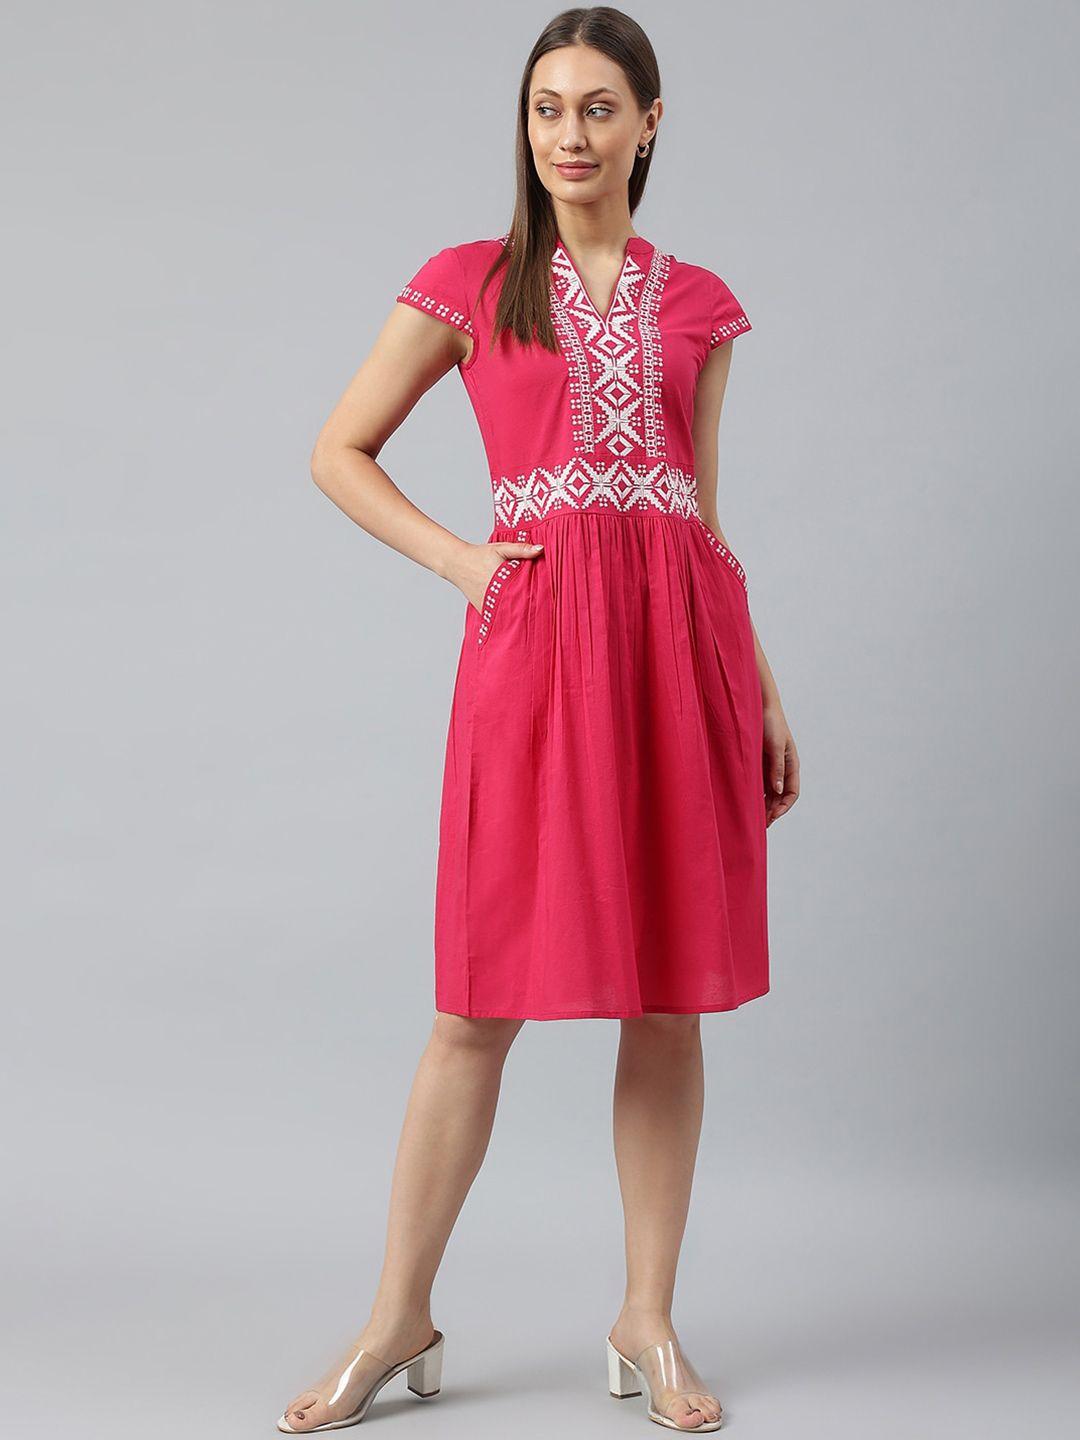 pinwheel pink dress